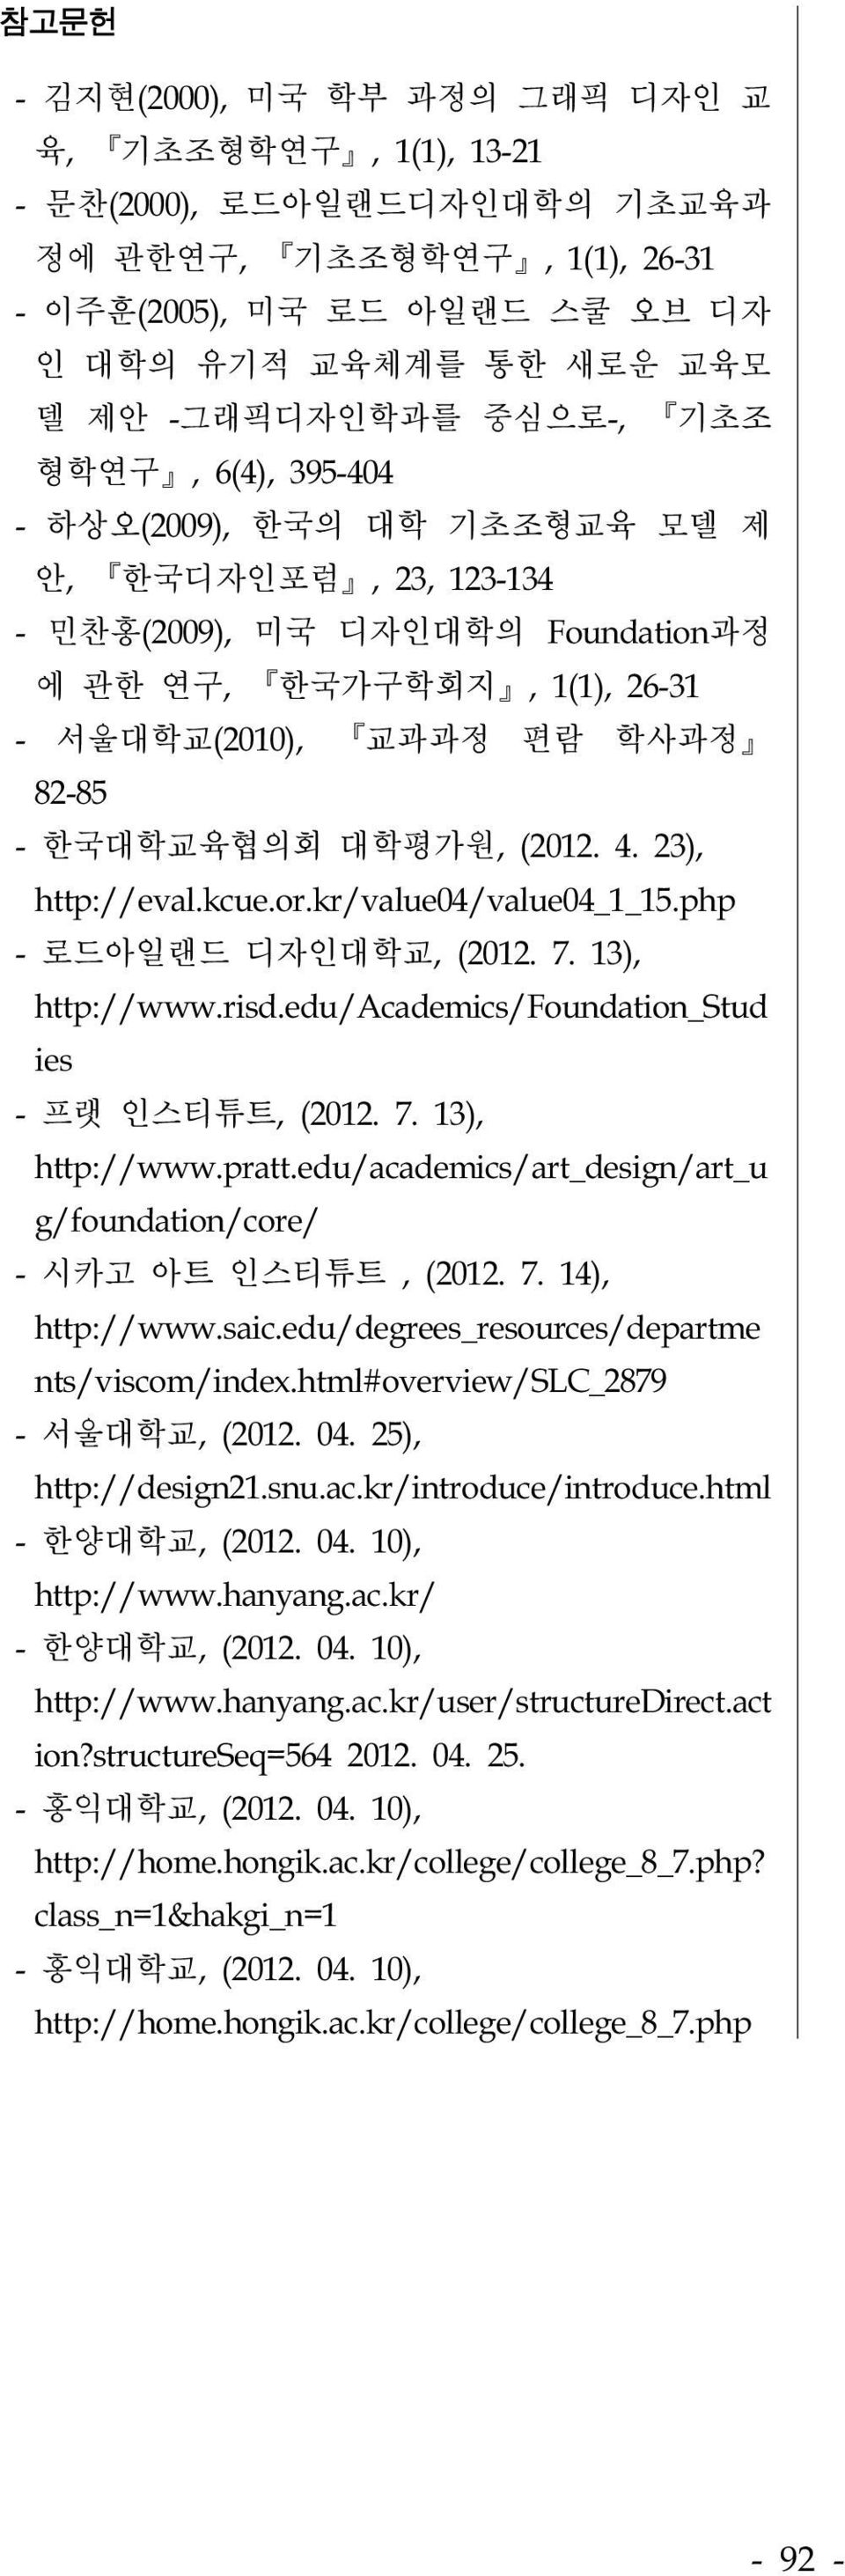 대학평가원, (2012. 4. 23), http://eval.kcue.or.kr/value04/value04_1_15.php - 로드아일랜드 디자인대학교, (2012. 7. 13), http://www.risd.edu/academics/foundation_stud ies - 프랫 인스티튜트, (2012. 7. 13), http://www.pratt.